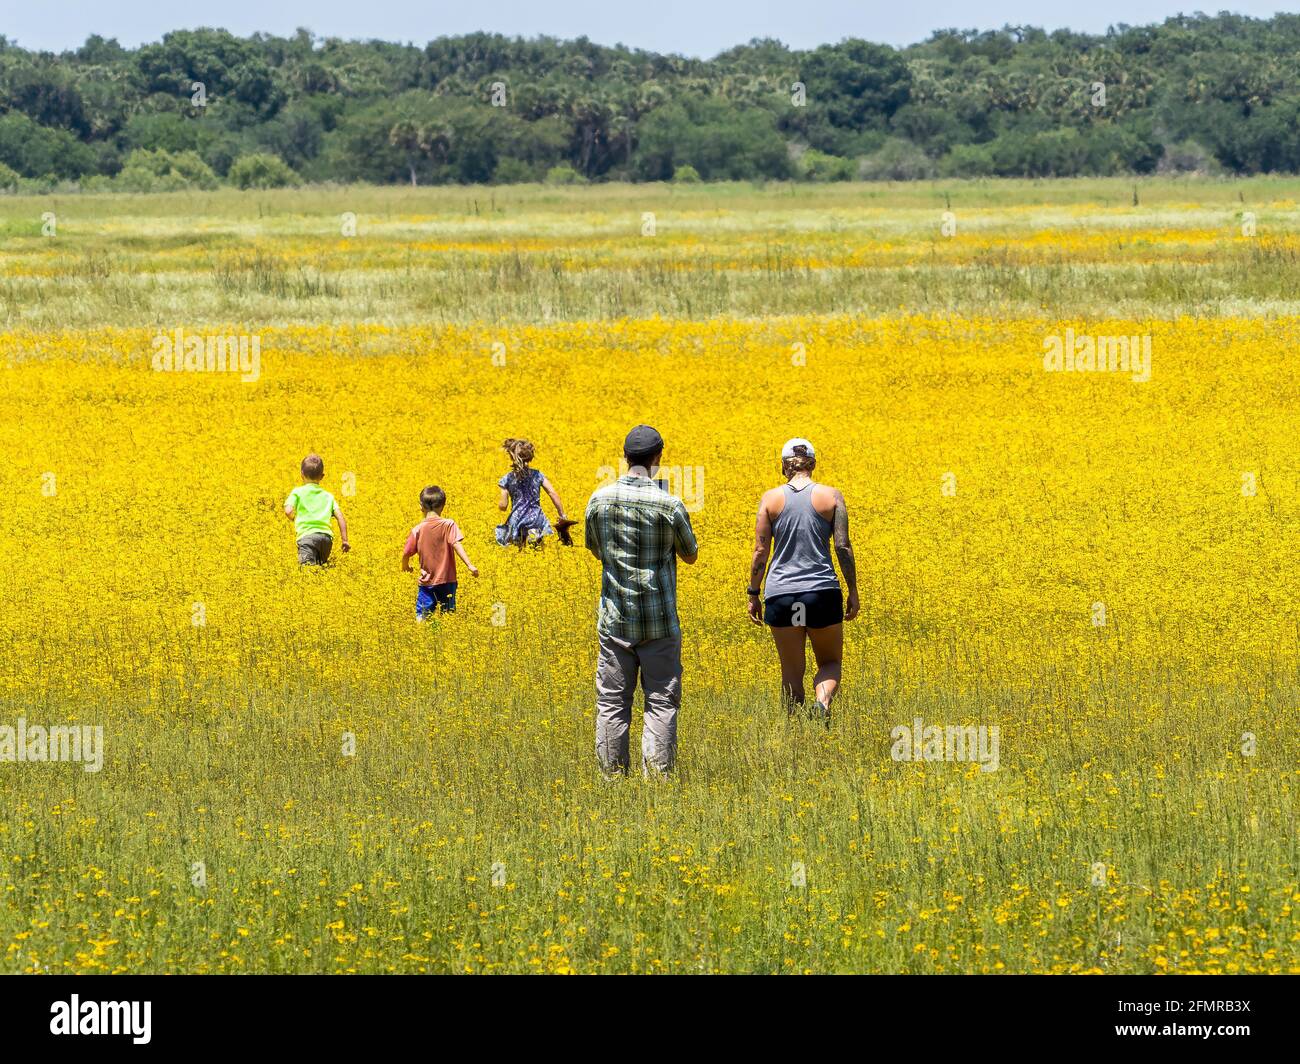 Famille d'enfants et de parents dans le champ de Coreopsis jaune Ou Tickseed dans le parc national de la rivière Myakka à Sarasota en Floride ÉTATS-UNIS Banque D'Images